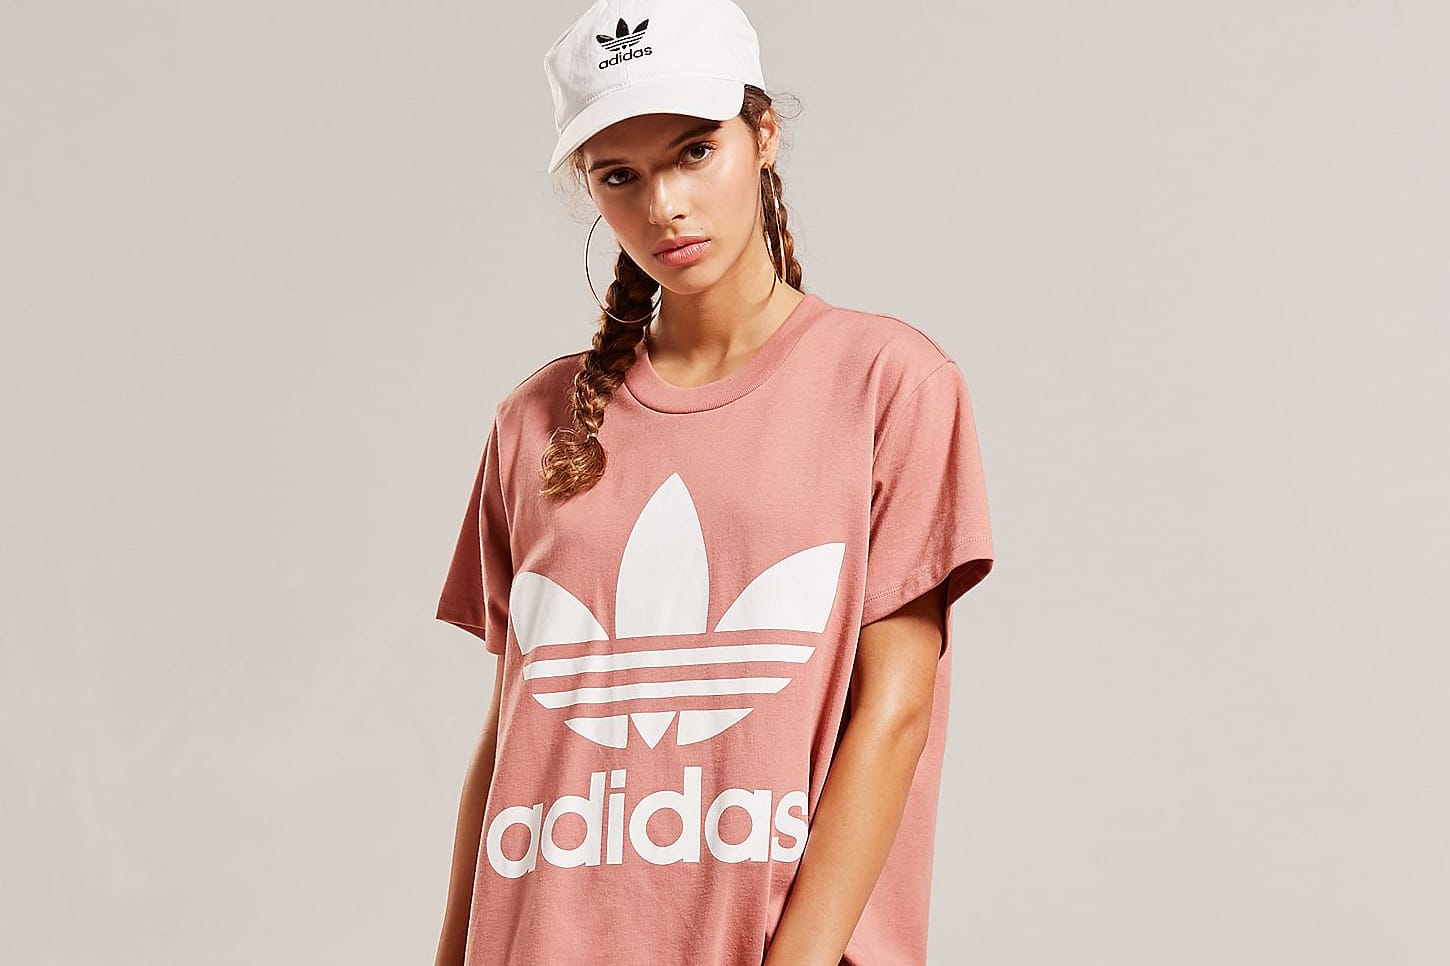 girls pink adidas t shirt